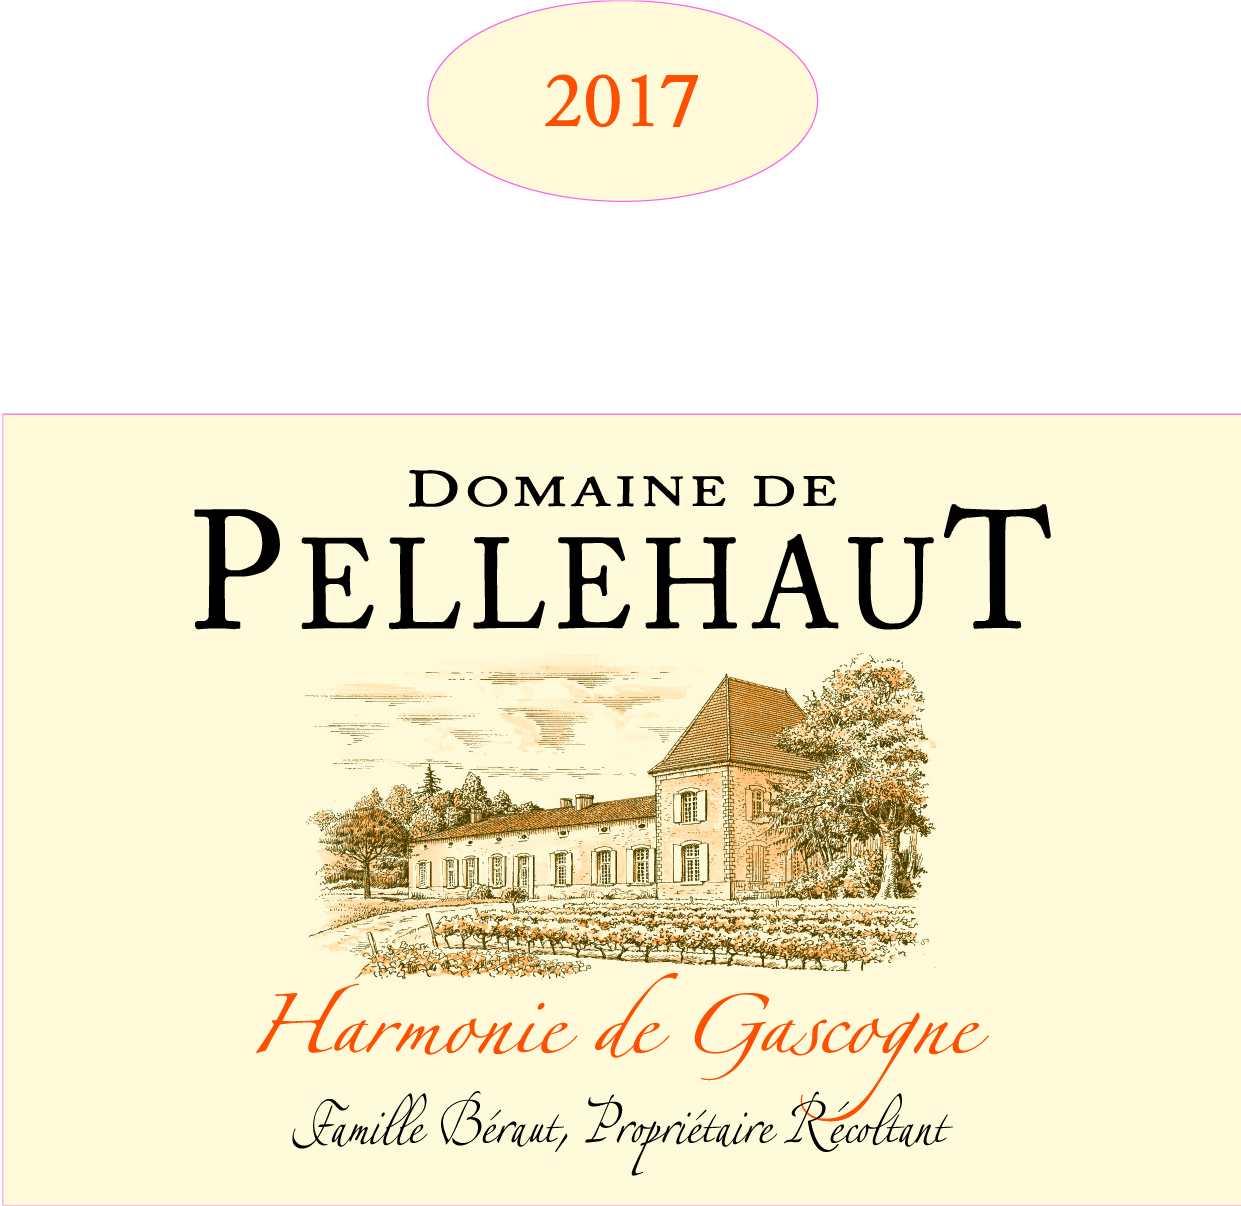 Domaine de Pellehaut Harmonie de Gascogne IGP Côtes de Gascogne White 2017